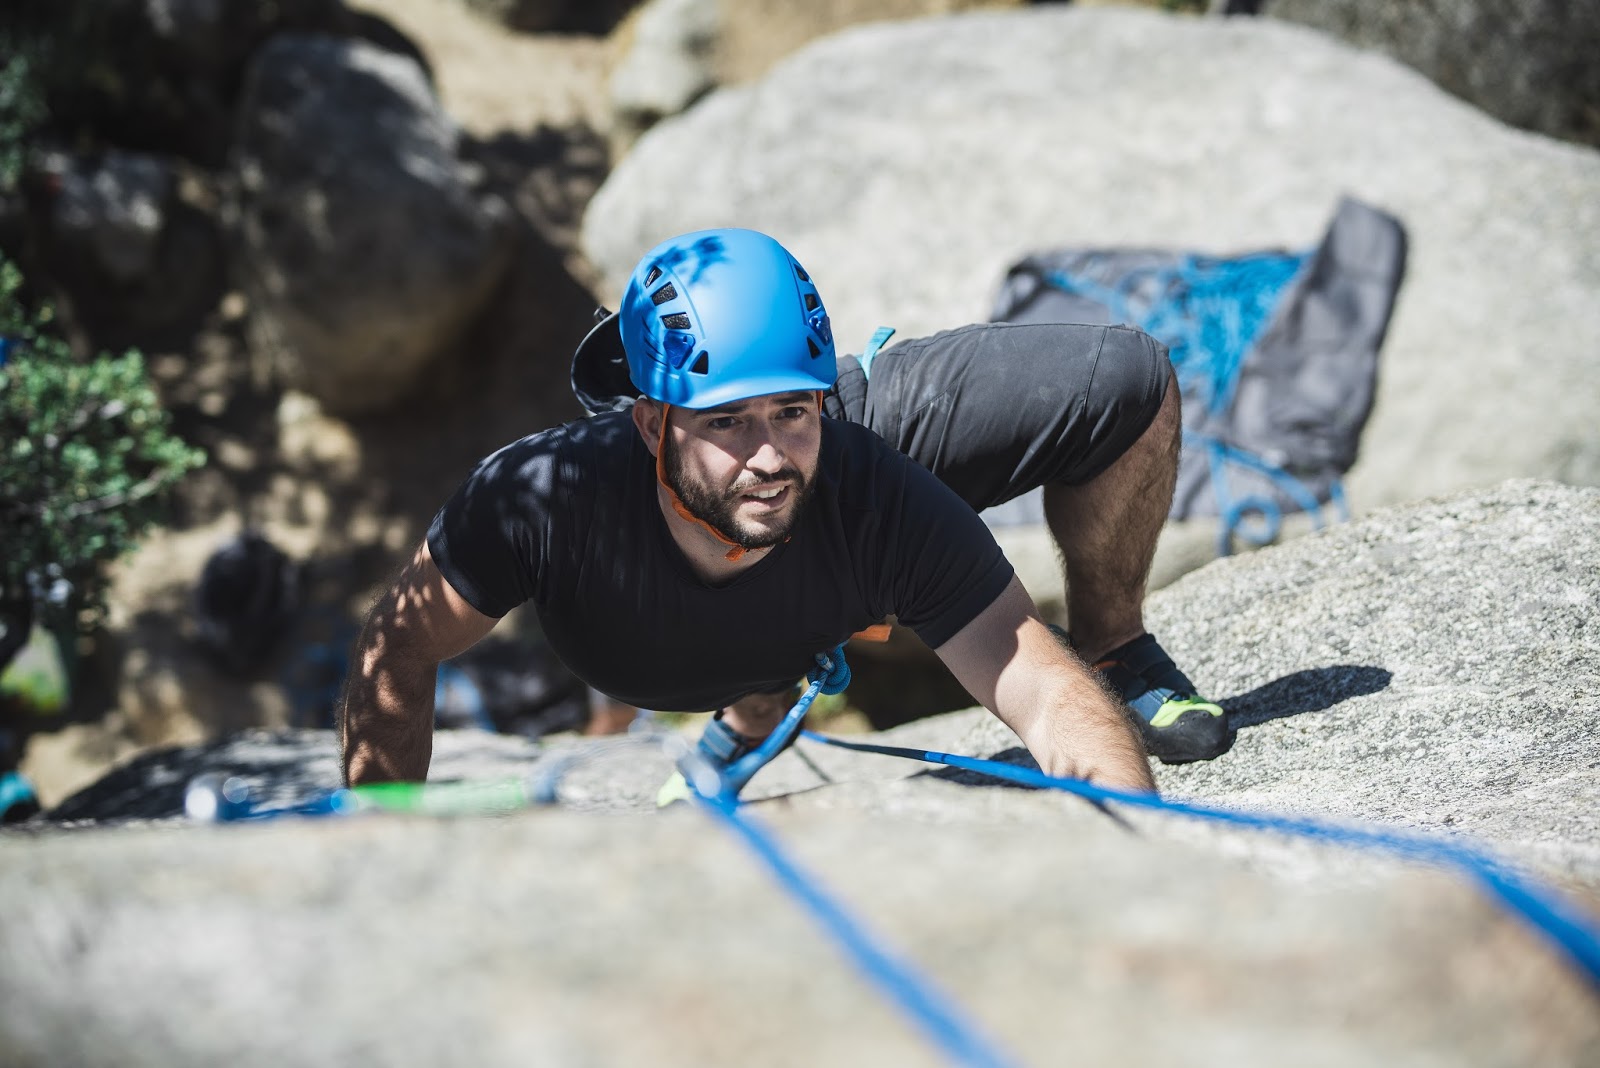 Maneras escalar: Decathlon y los nuevos productos de escalada Simond